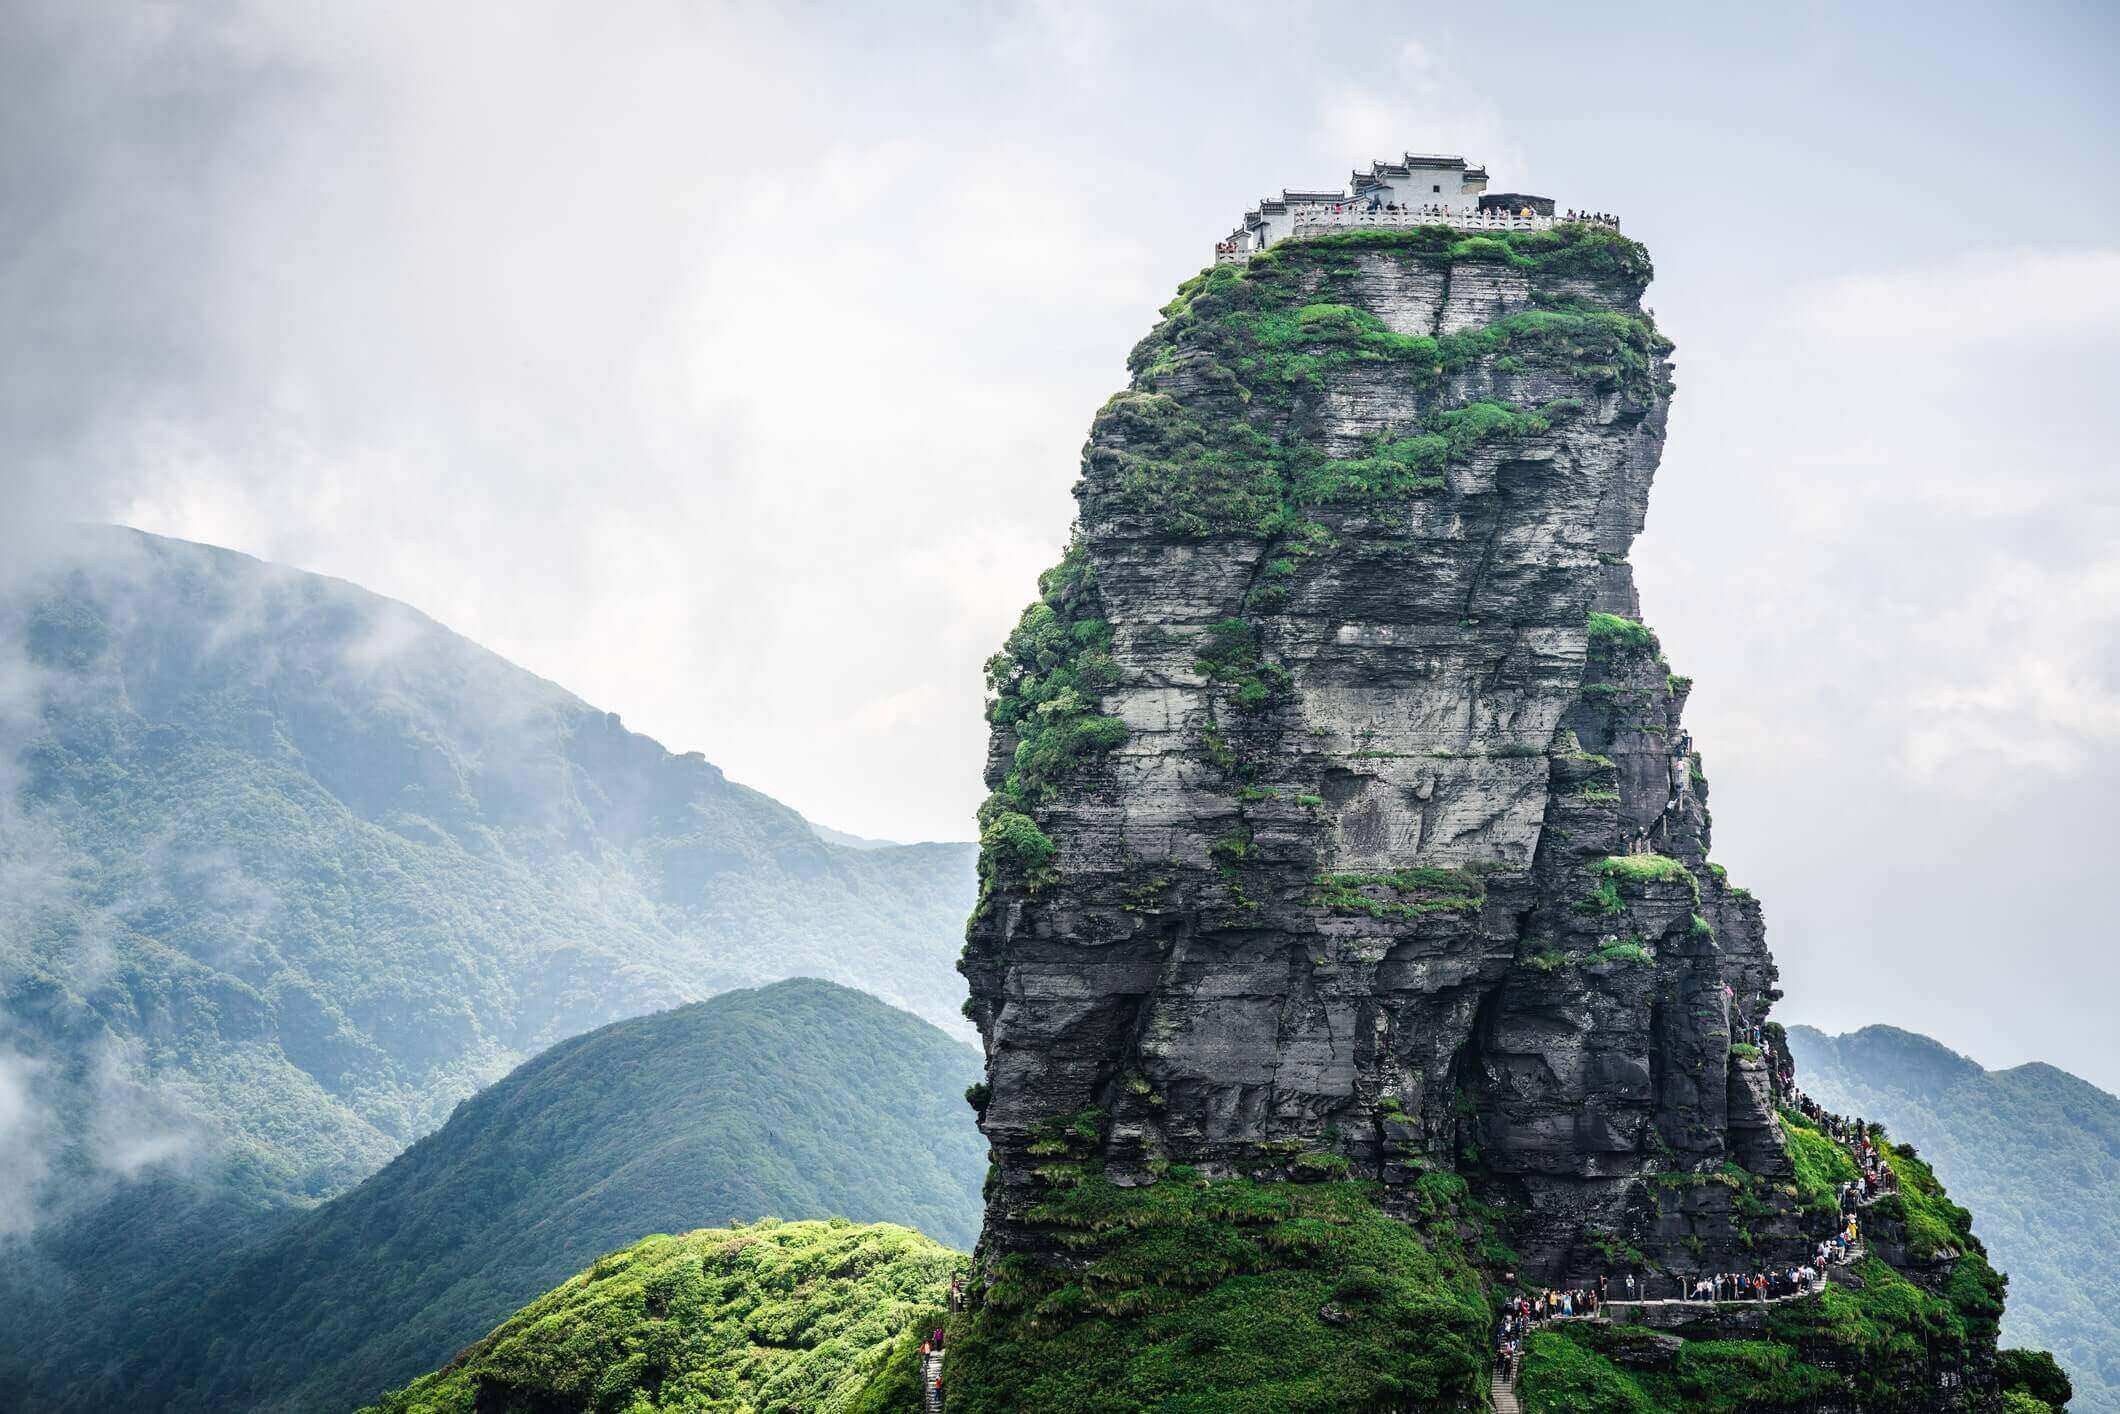 Mount Fanjing in China